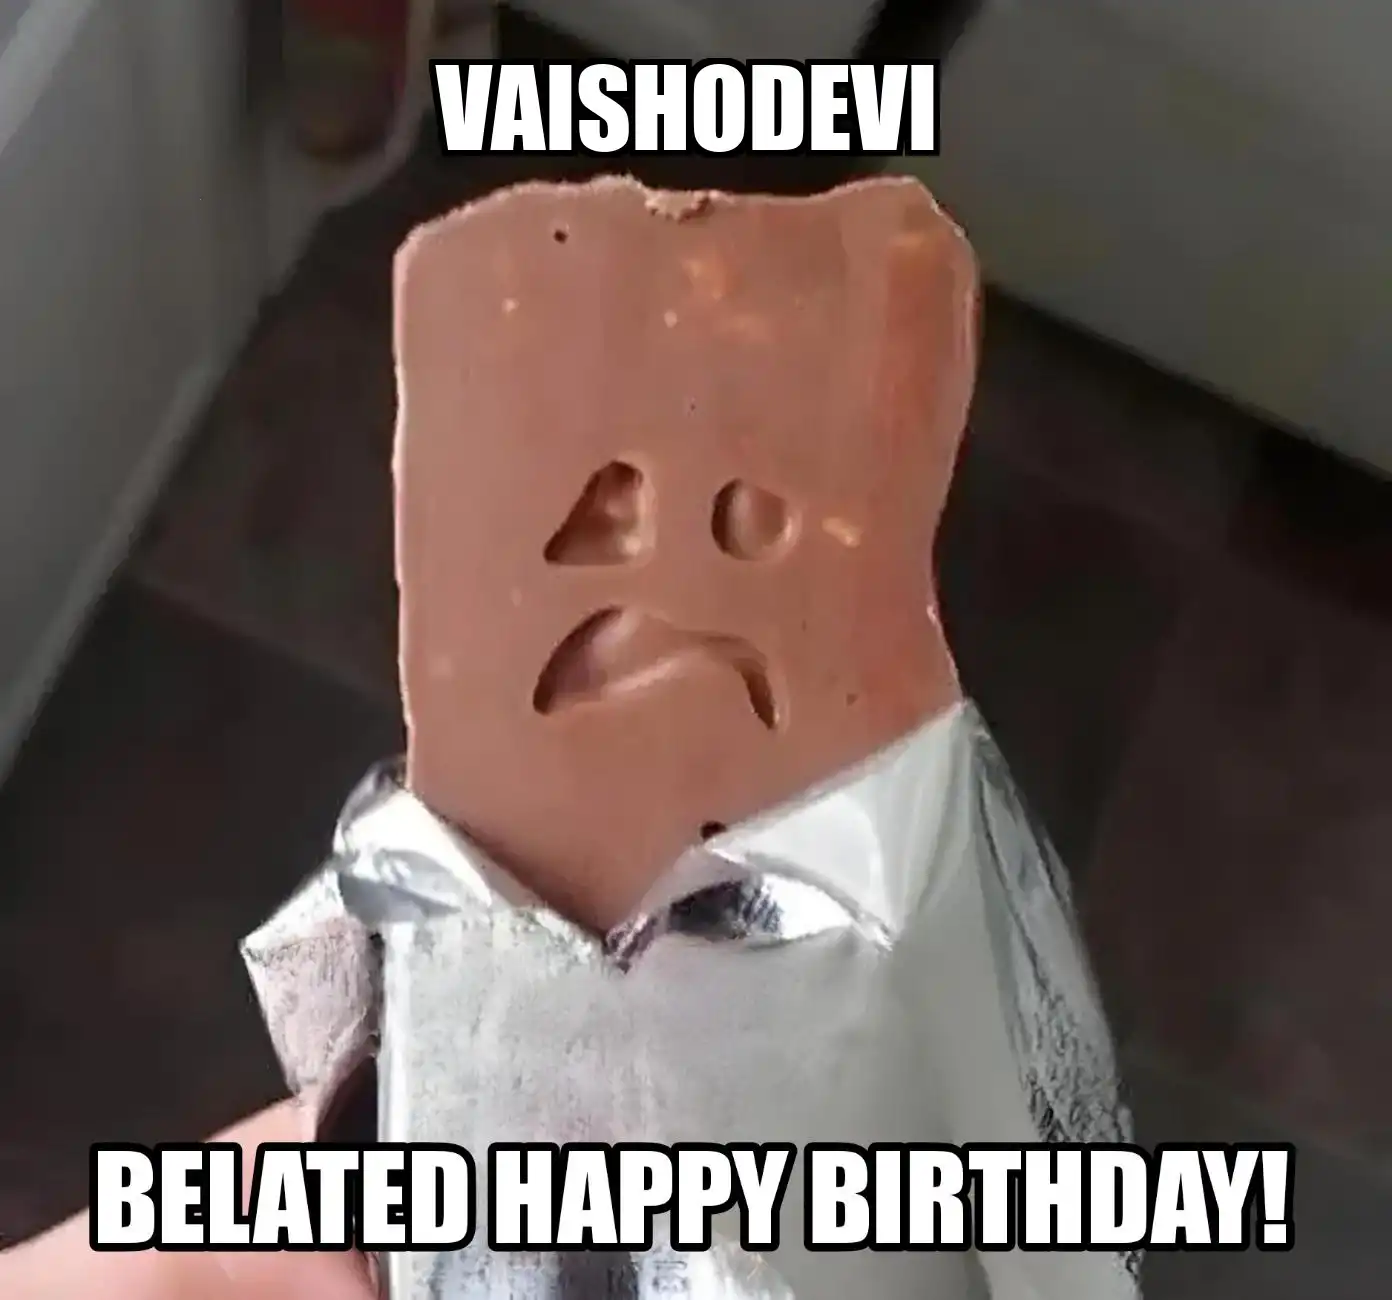 Happy Birthday Vaishodevi Belated Happy Birthday Meme